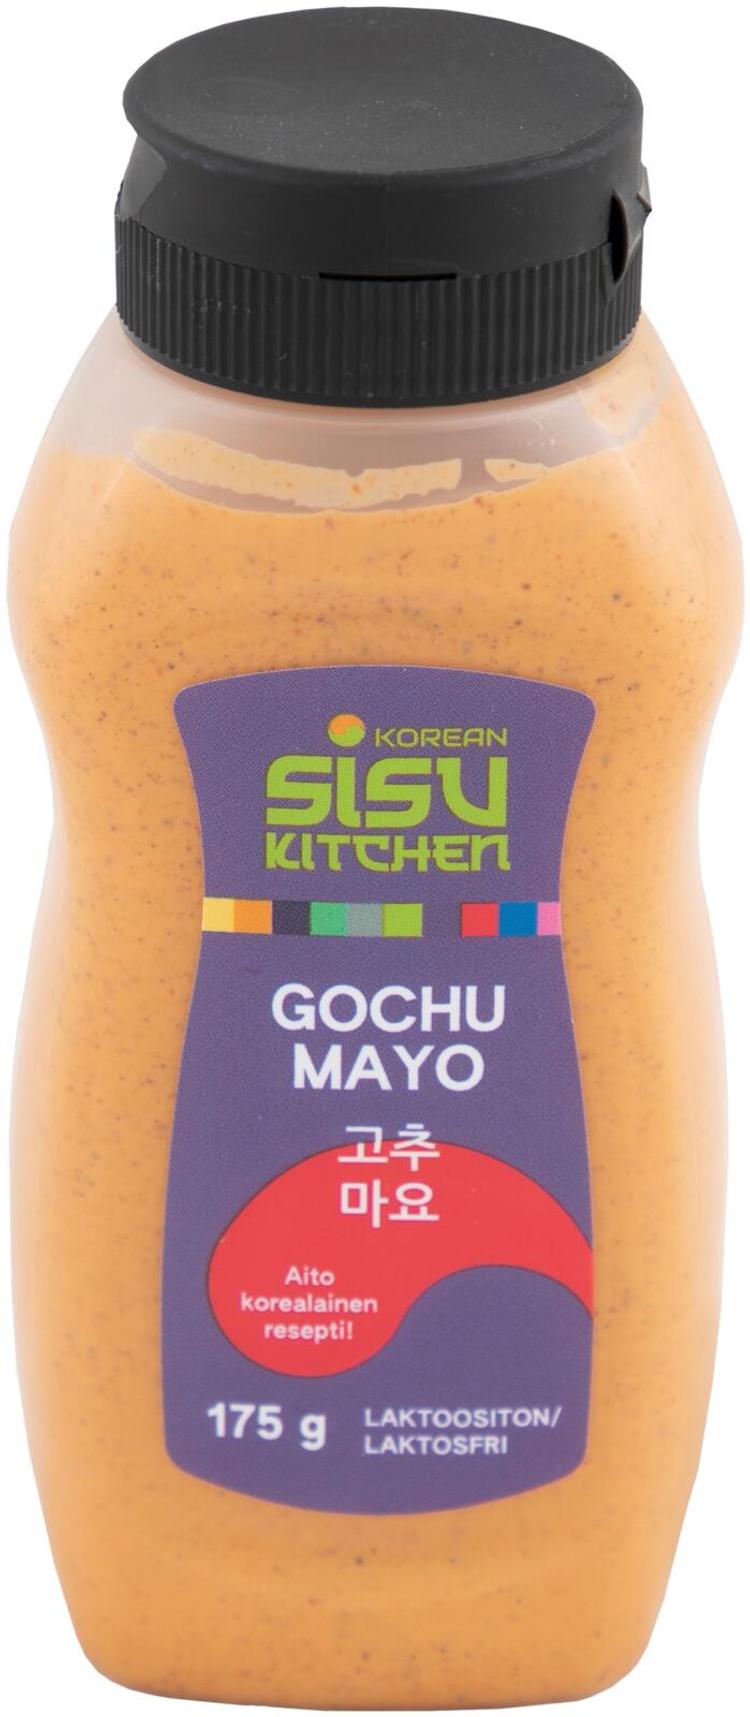 Sisu Kitchen Gochu Mayo majoneesi 175 g